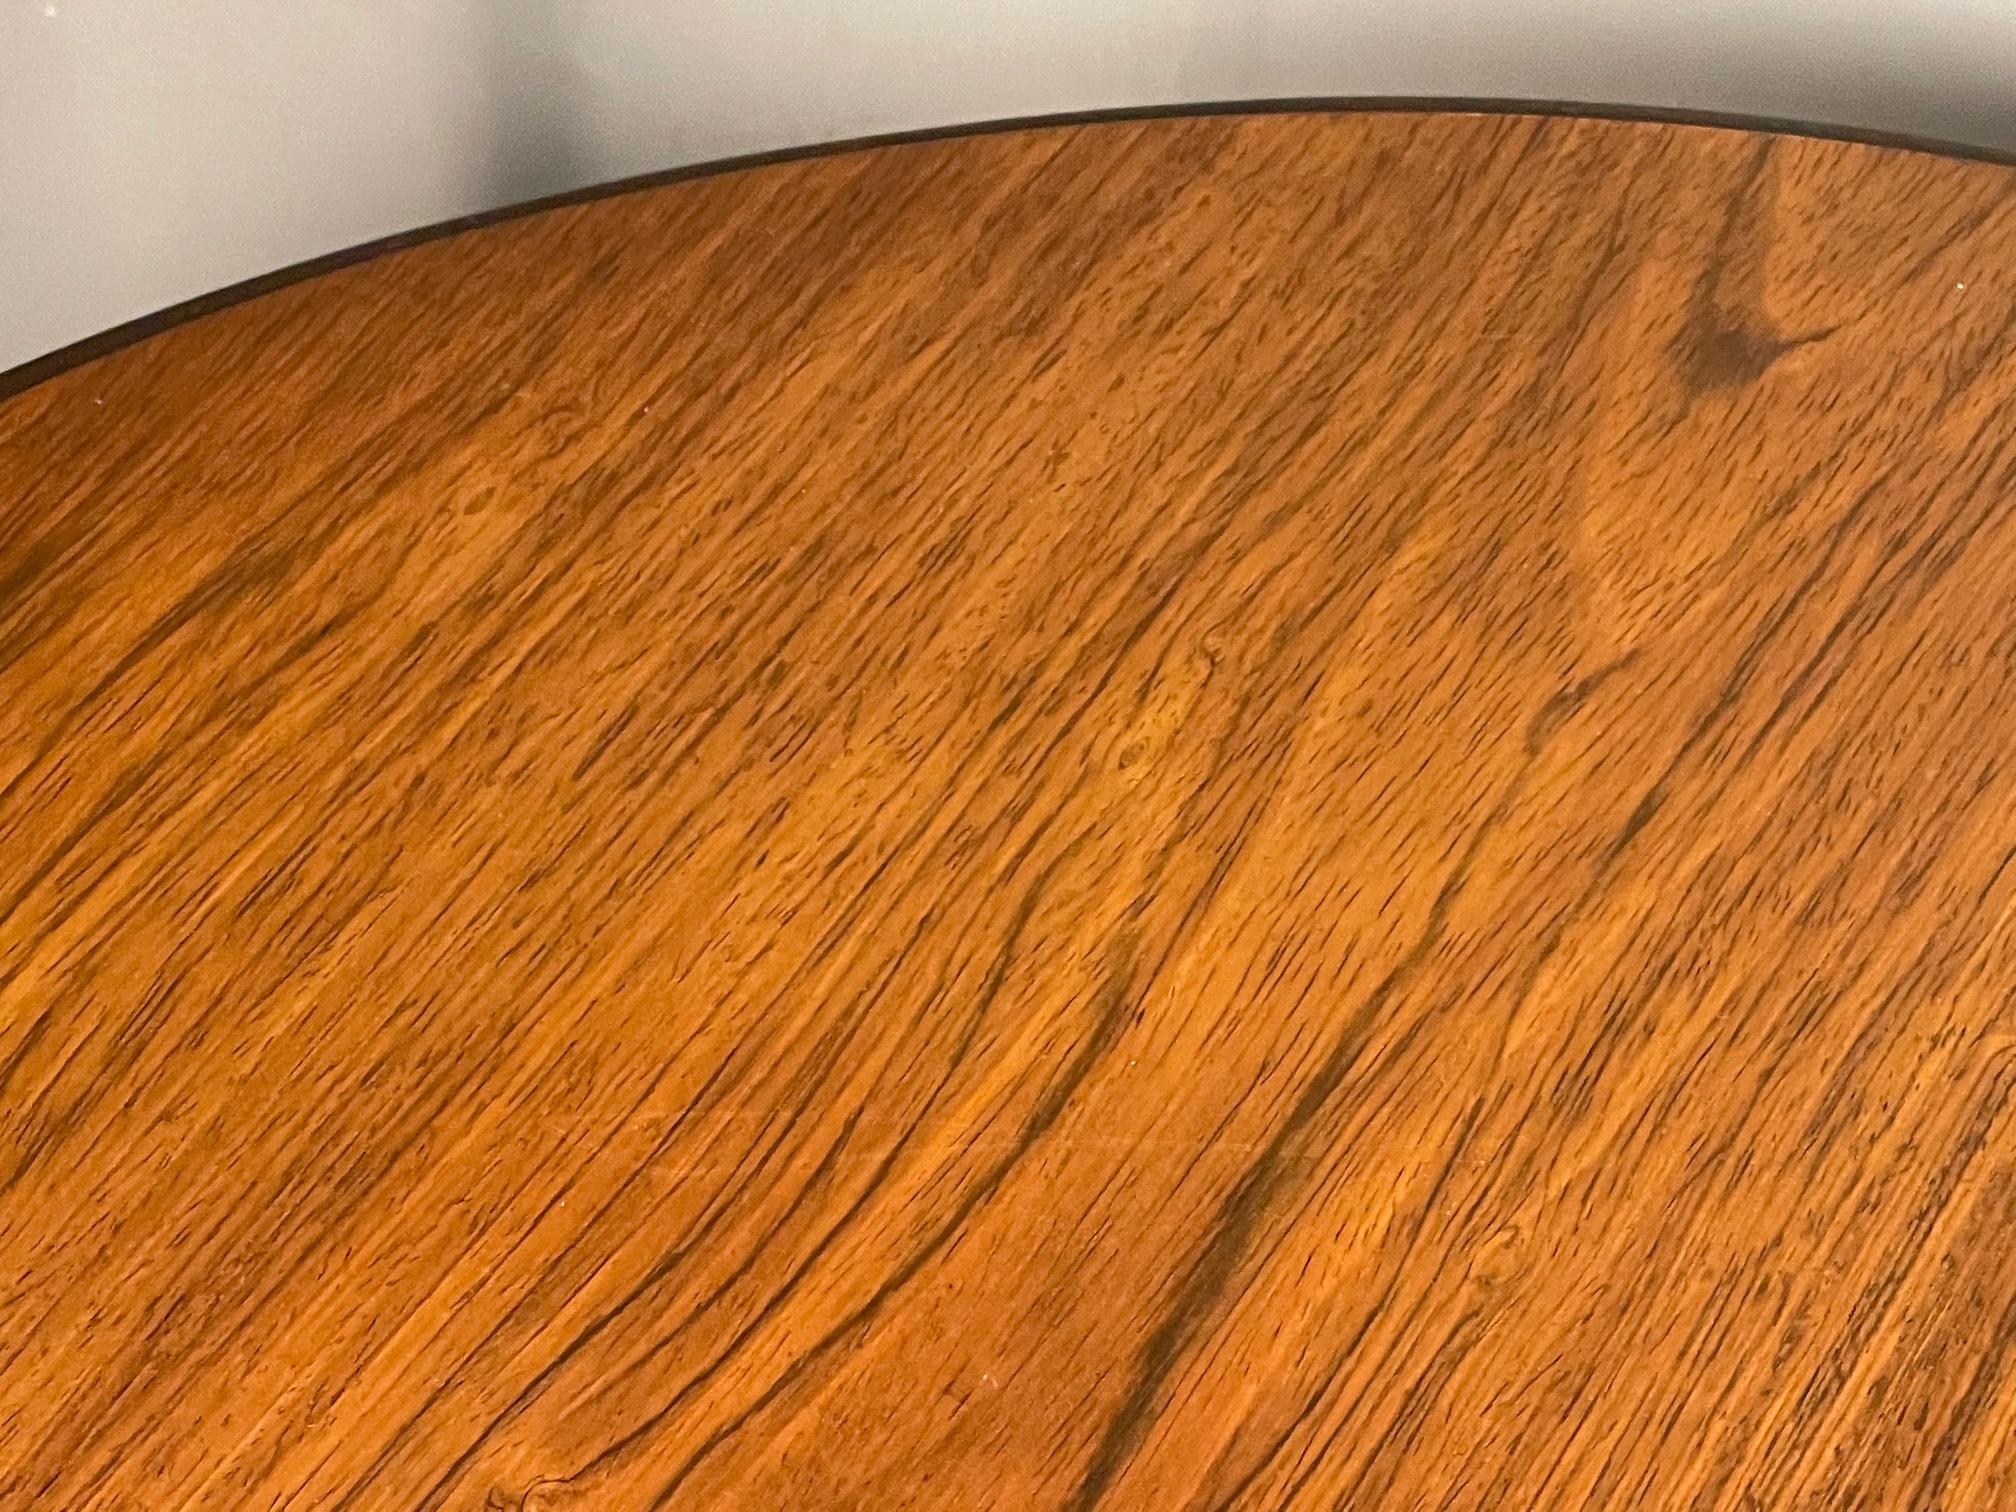 Ein Paar ungewöhnlicher Tische von Dunbar aus den 1970er Jahren. Großer Maßstab - perfekt als Beistelltisch oder Lampentisch, Platten aus Walnussholz, Beine mit strukturellem Ausschnitt.